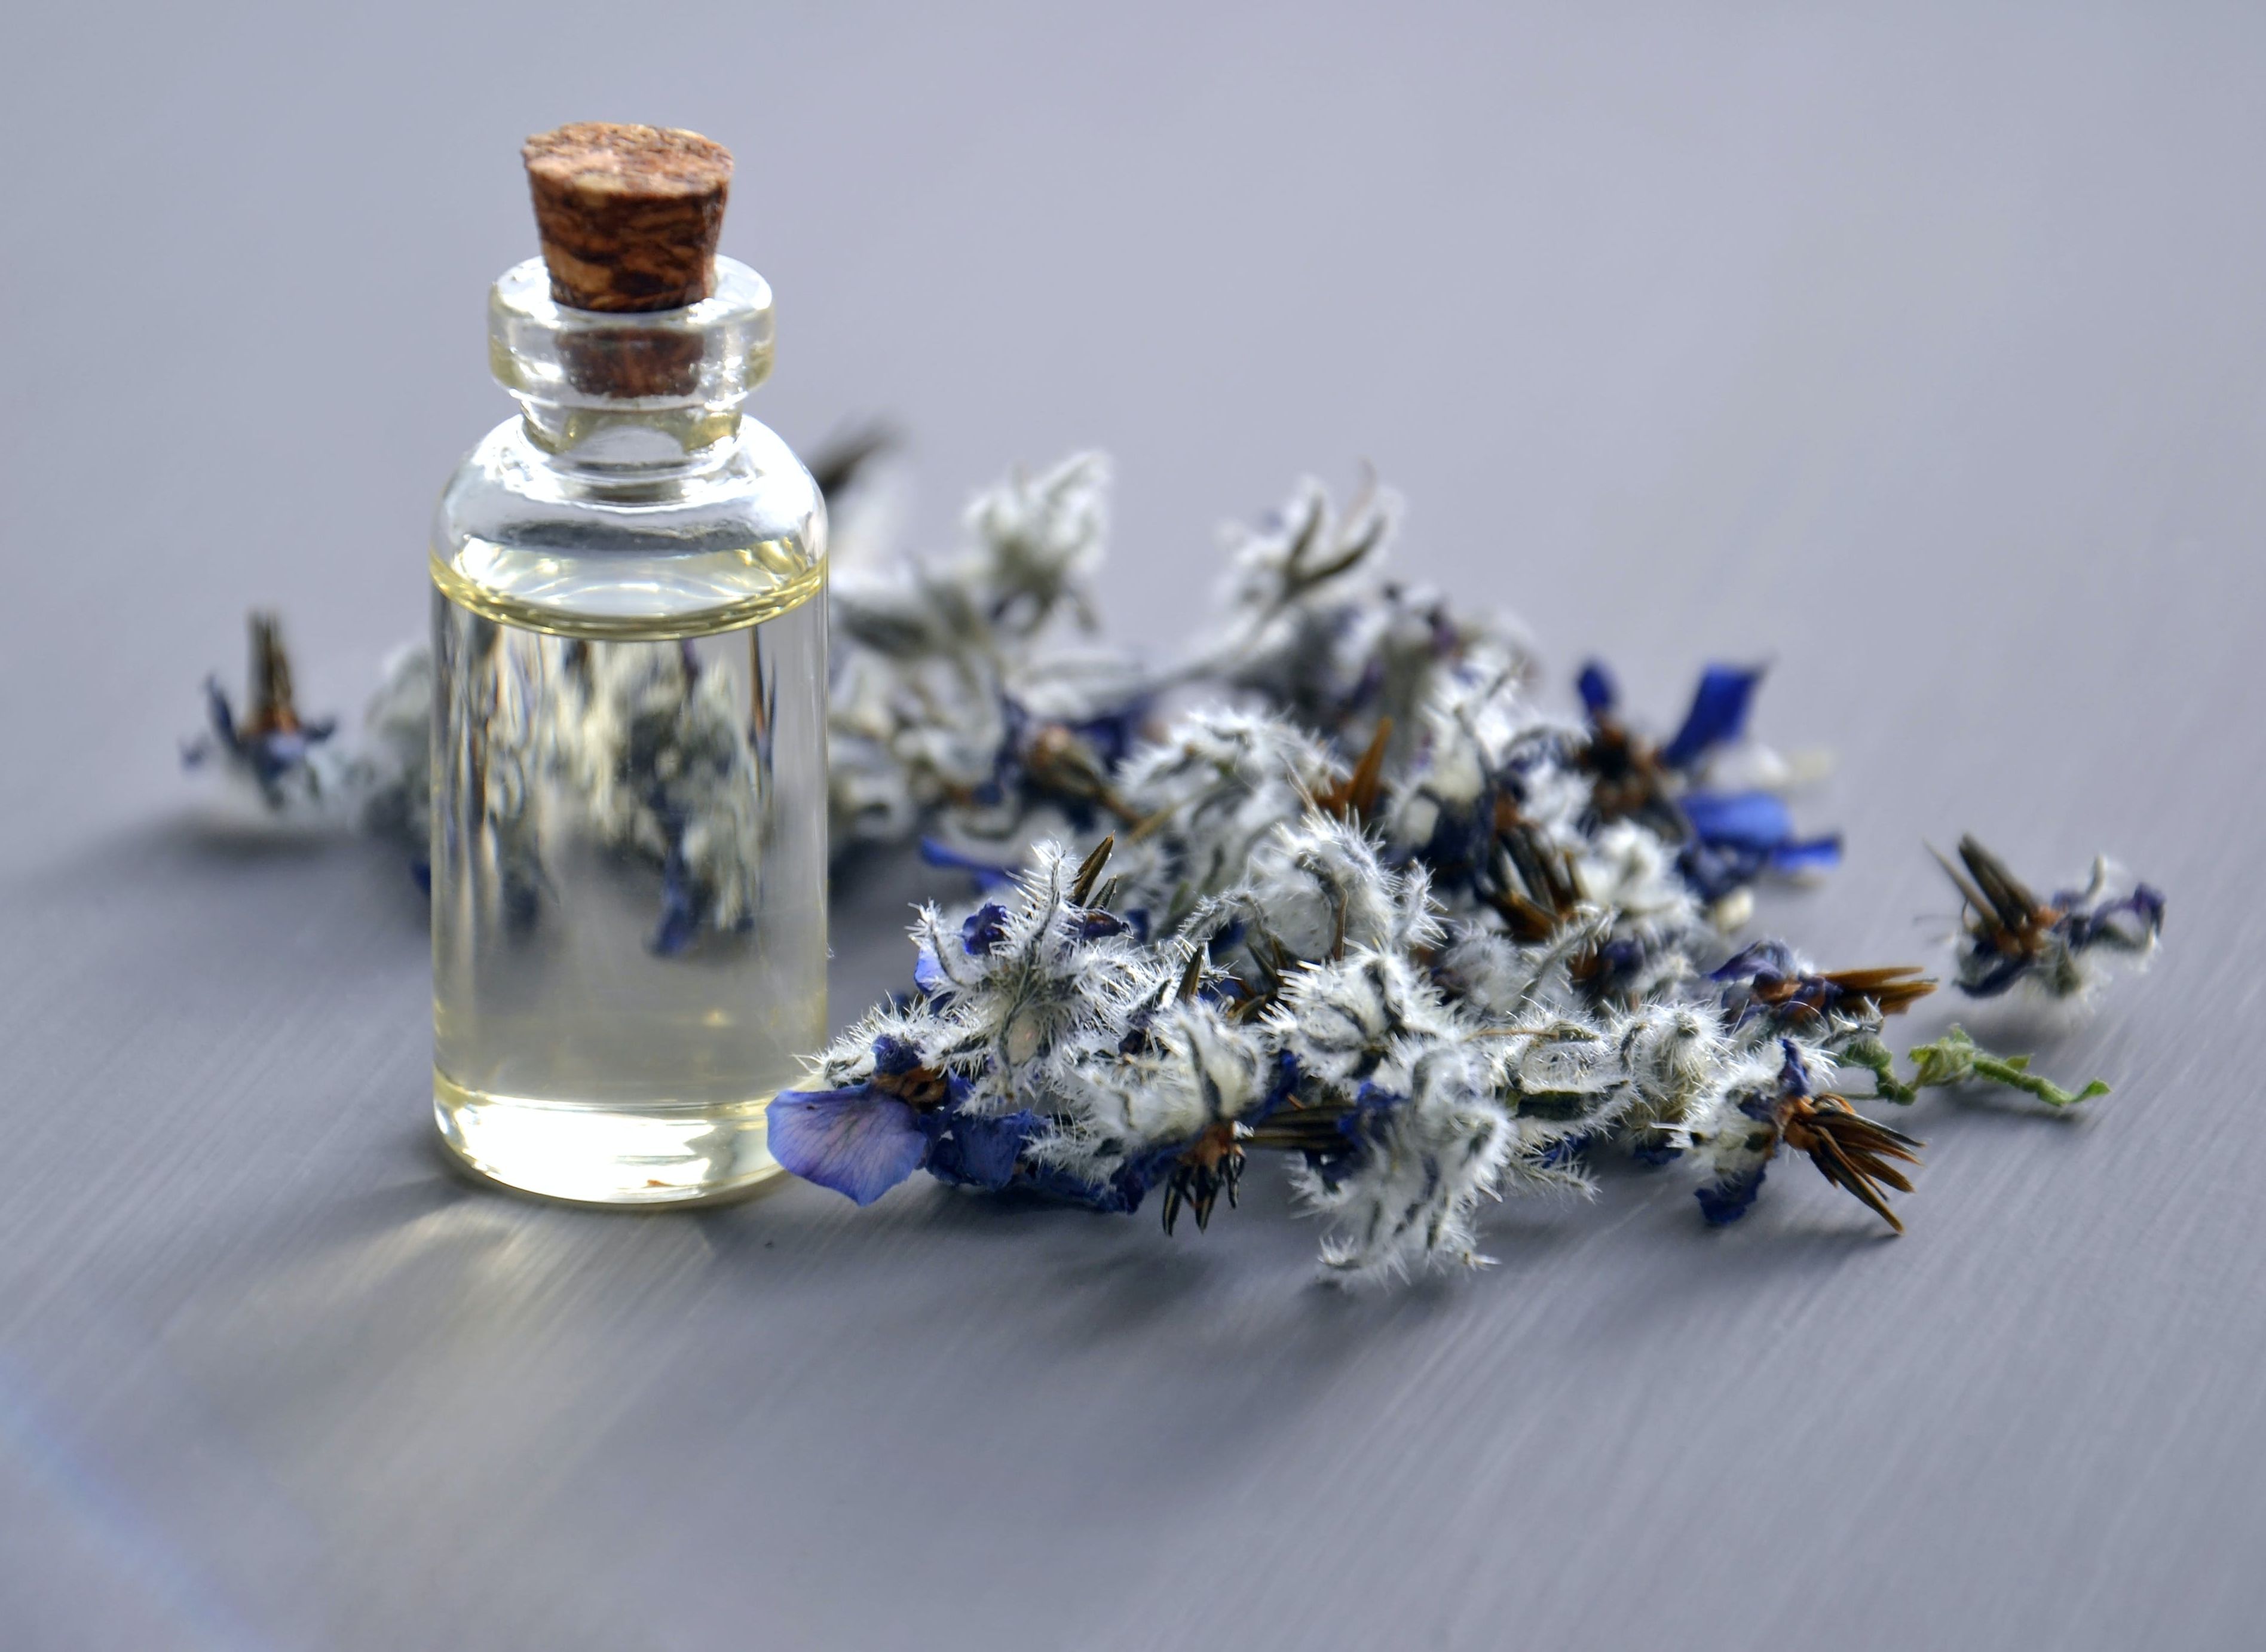 Un produttore polacco di integratori alimentari e oli essenziali sta cercando fornitori di ingredienti e accessori per l'aromaterapia.